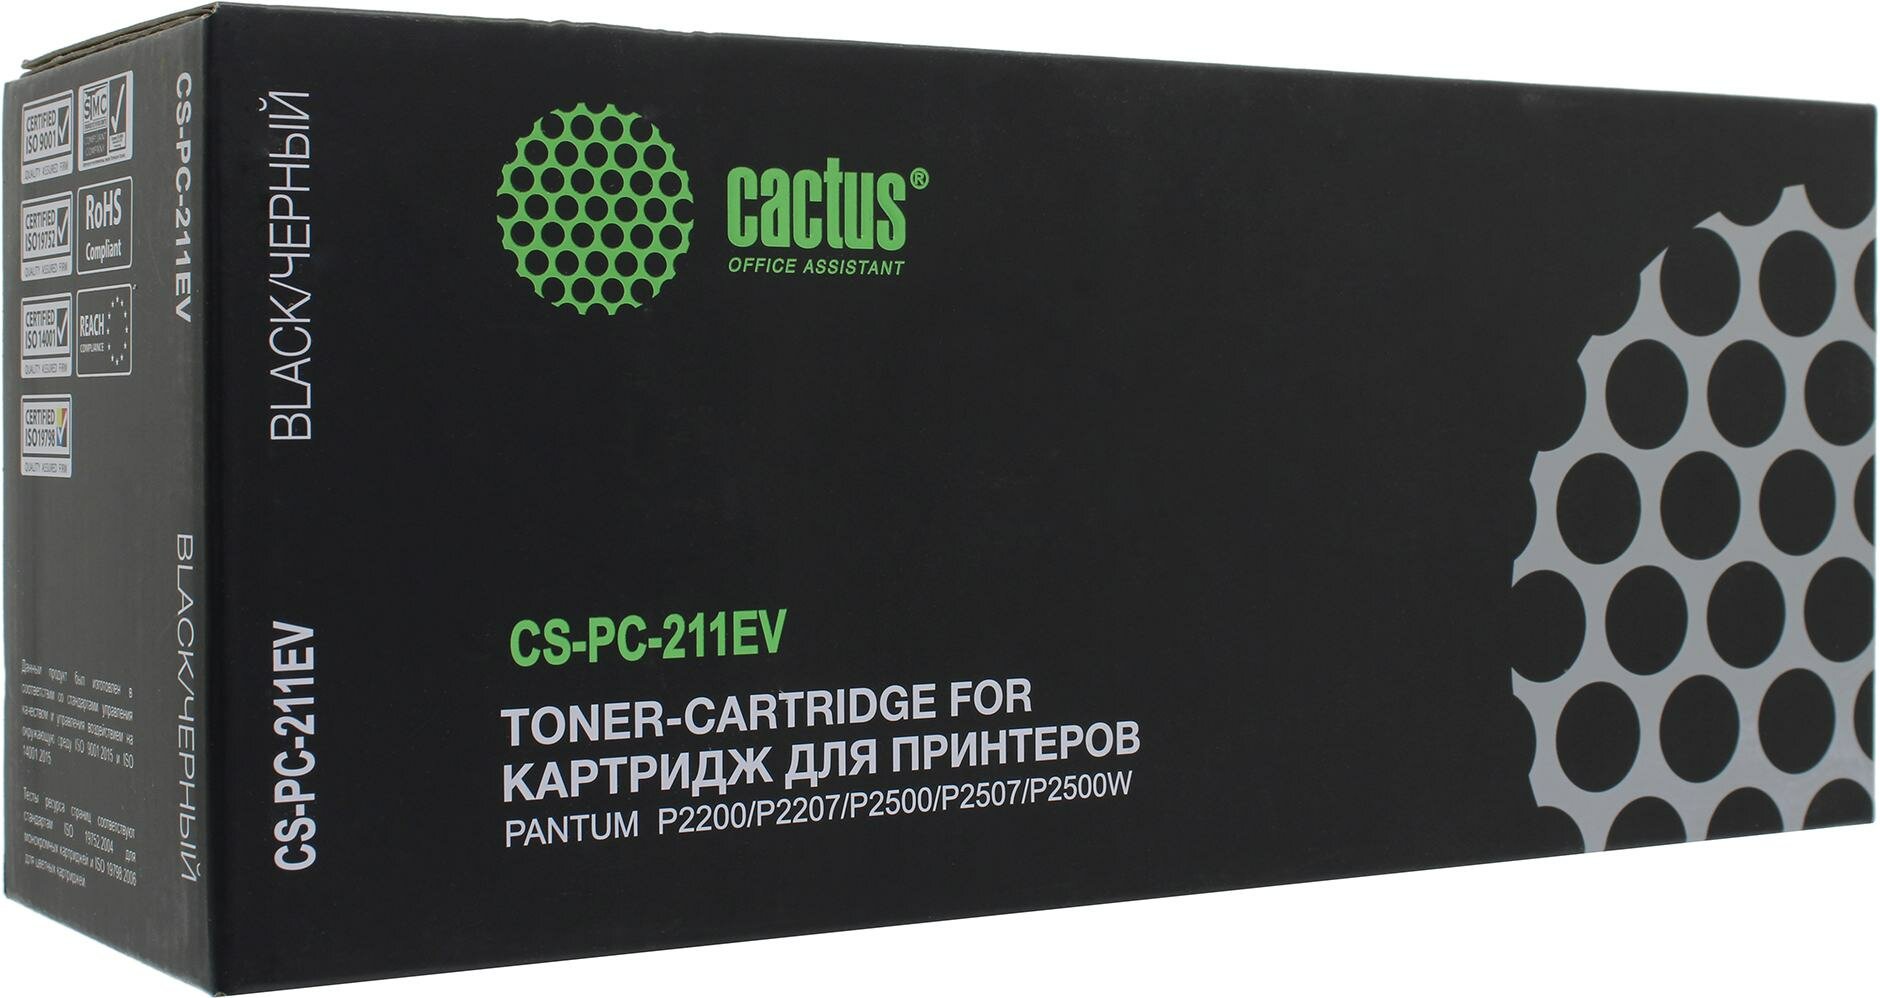 Картридж Cactus CS-PC-211EV, черный, 1600 страниц, совместимый для Pantum P2200/P2207/P2500/P2507/P2500W/M6500/M6550/M6607